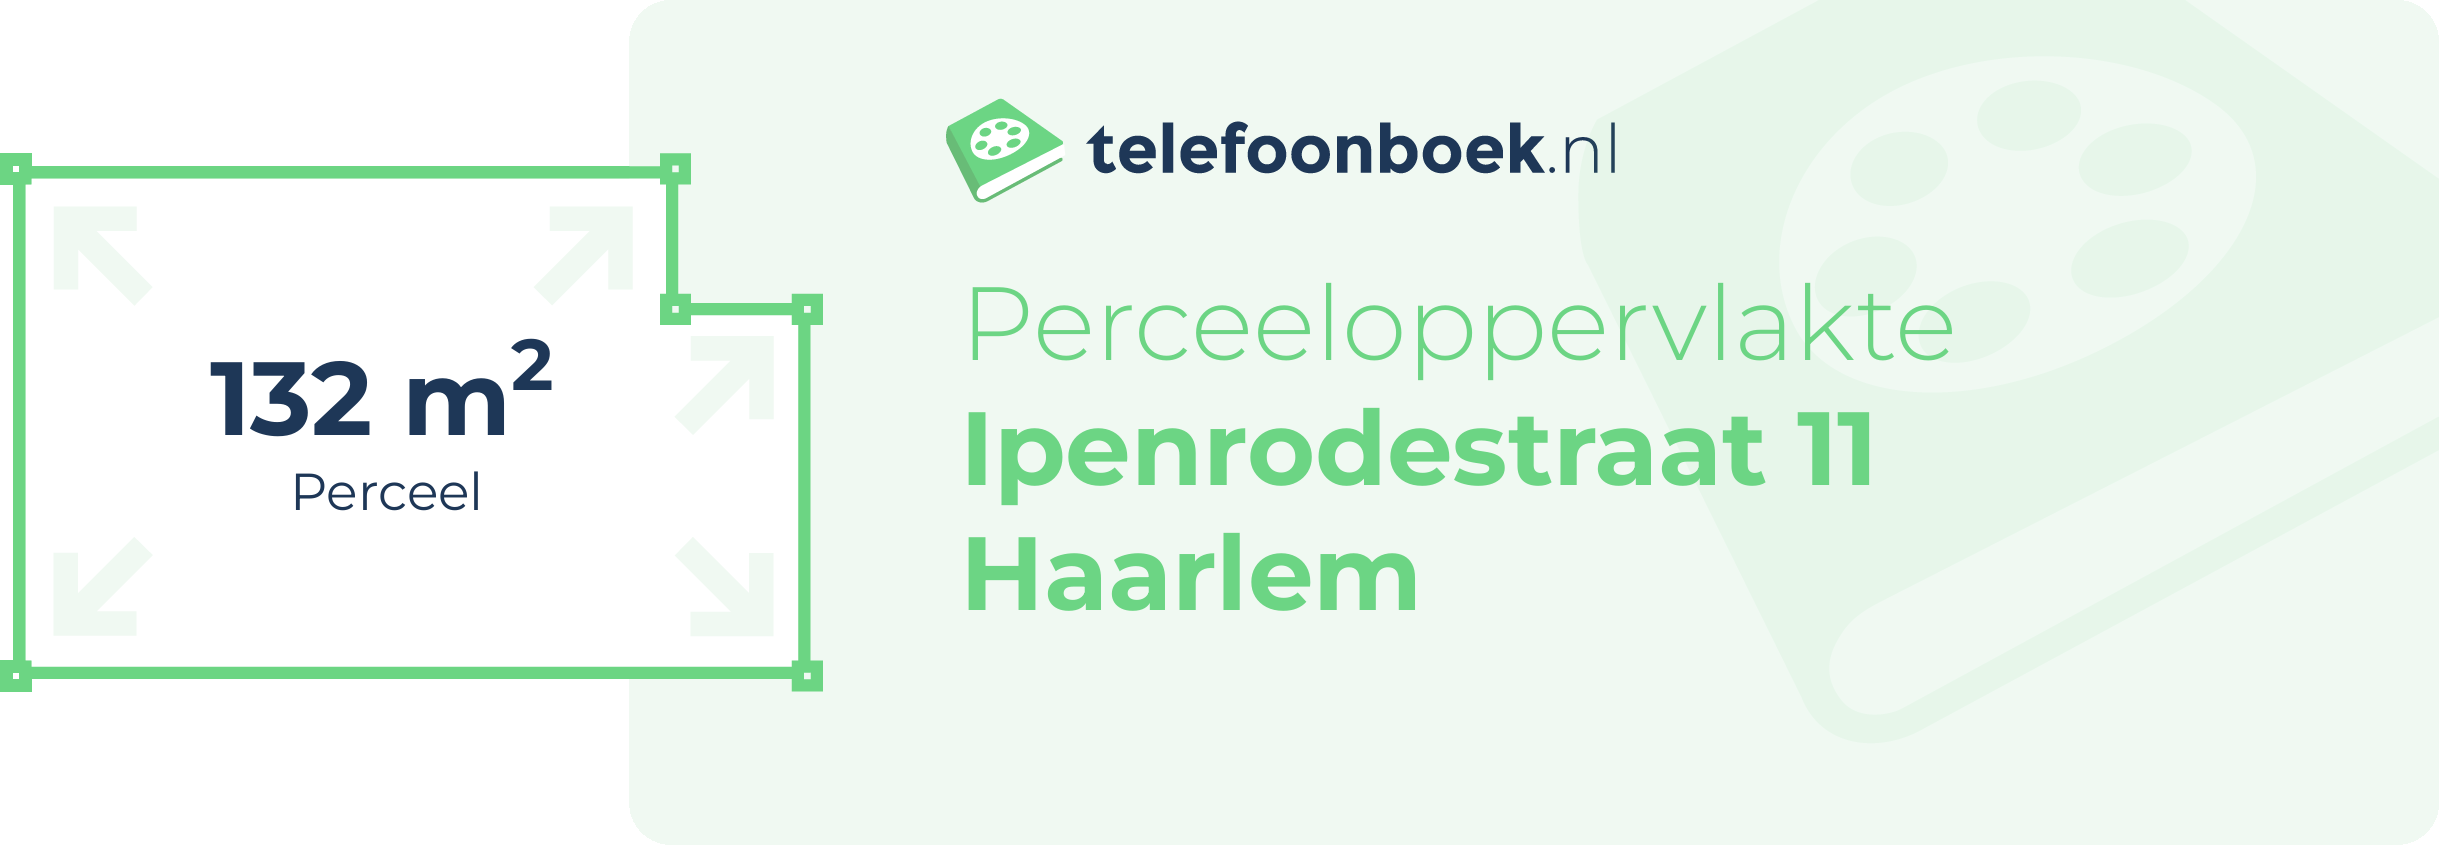 Perceeloppervlakte Ipenrodestraat 11 Haarlem